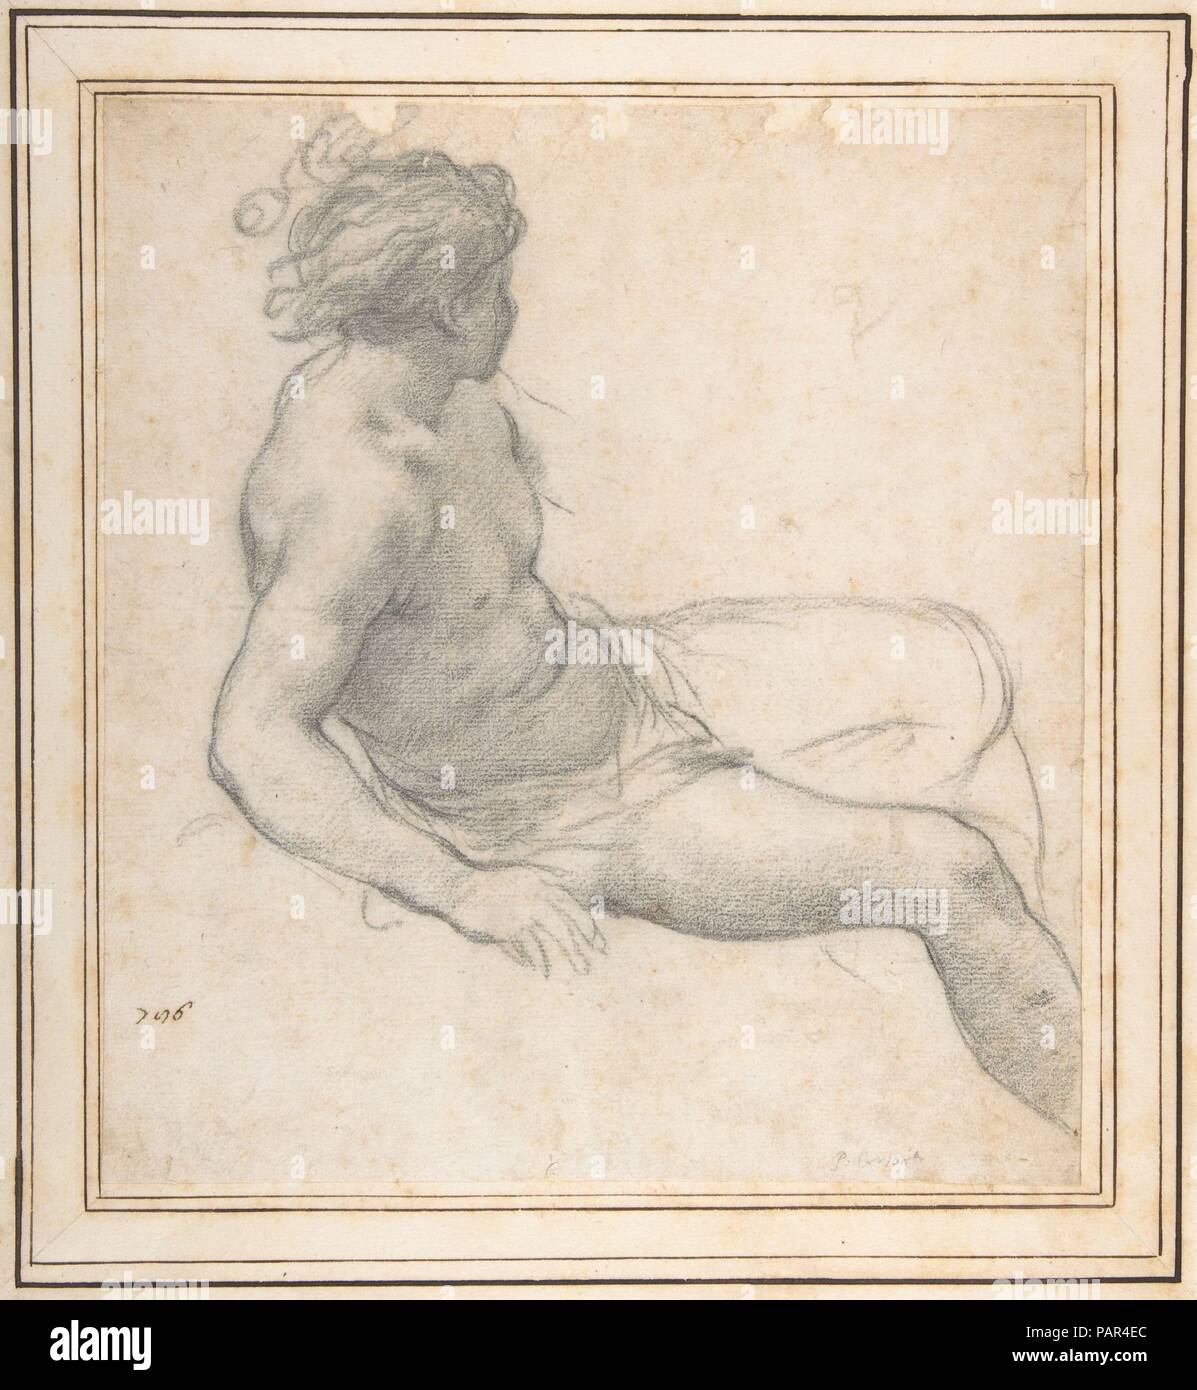 Étude d'un assis Jeunesse pour l'âge d'or. Artiste : Pietro da Cortona (Pietro Berrettini) italien (1596-1669), Cortona Rome. Dimensions : 11-1/4 x 10-1/4 in. (28,6 x 26 cm). Date : 1637. En juin 1637, Pietro da Cortona, le peintre baroque italien de son temps, est arrivé à Florence et a immédiatement commencé un cycle de fresques commandées par le Grand-duc de Toscane, Ferdinand II (1610-1670) et sa femme Vittoria della Rovere (1622-1694), pour la caméra della Stufa dans le Palais Pitti. Le sujet a été le 'quatre âges du monde" comme l'a raconté au début de l'OVIDE, un classi Banque D'Images